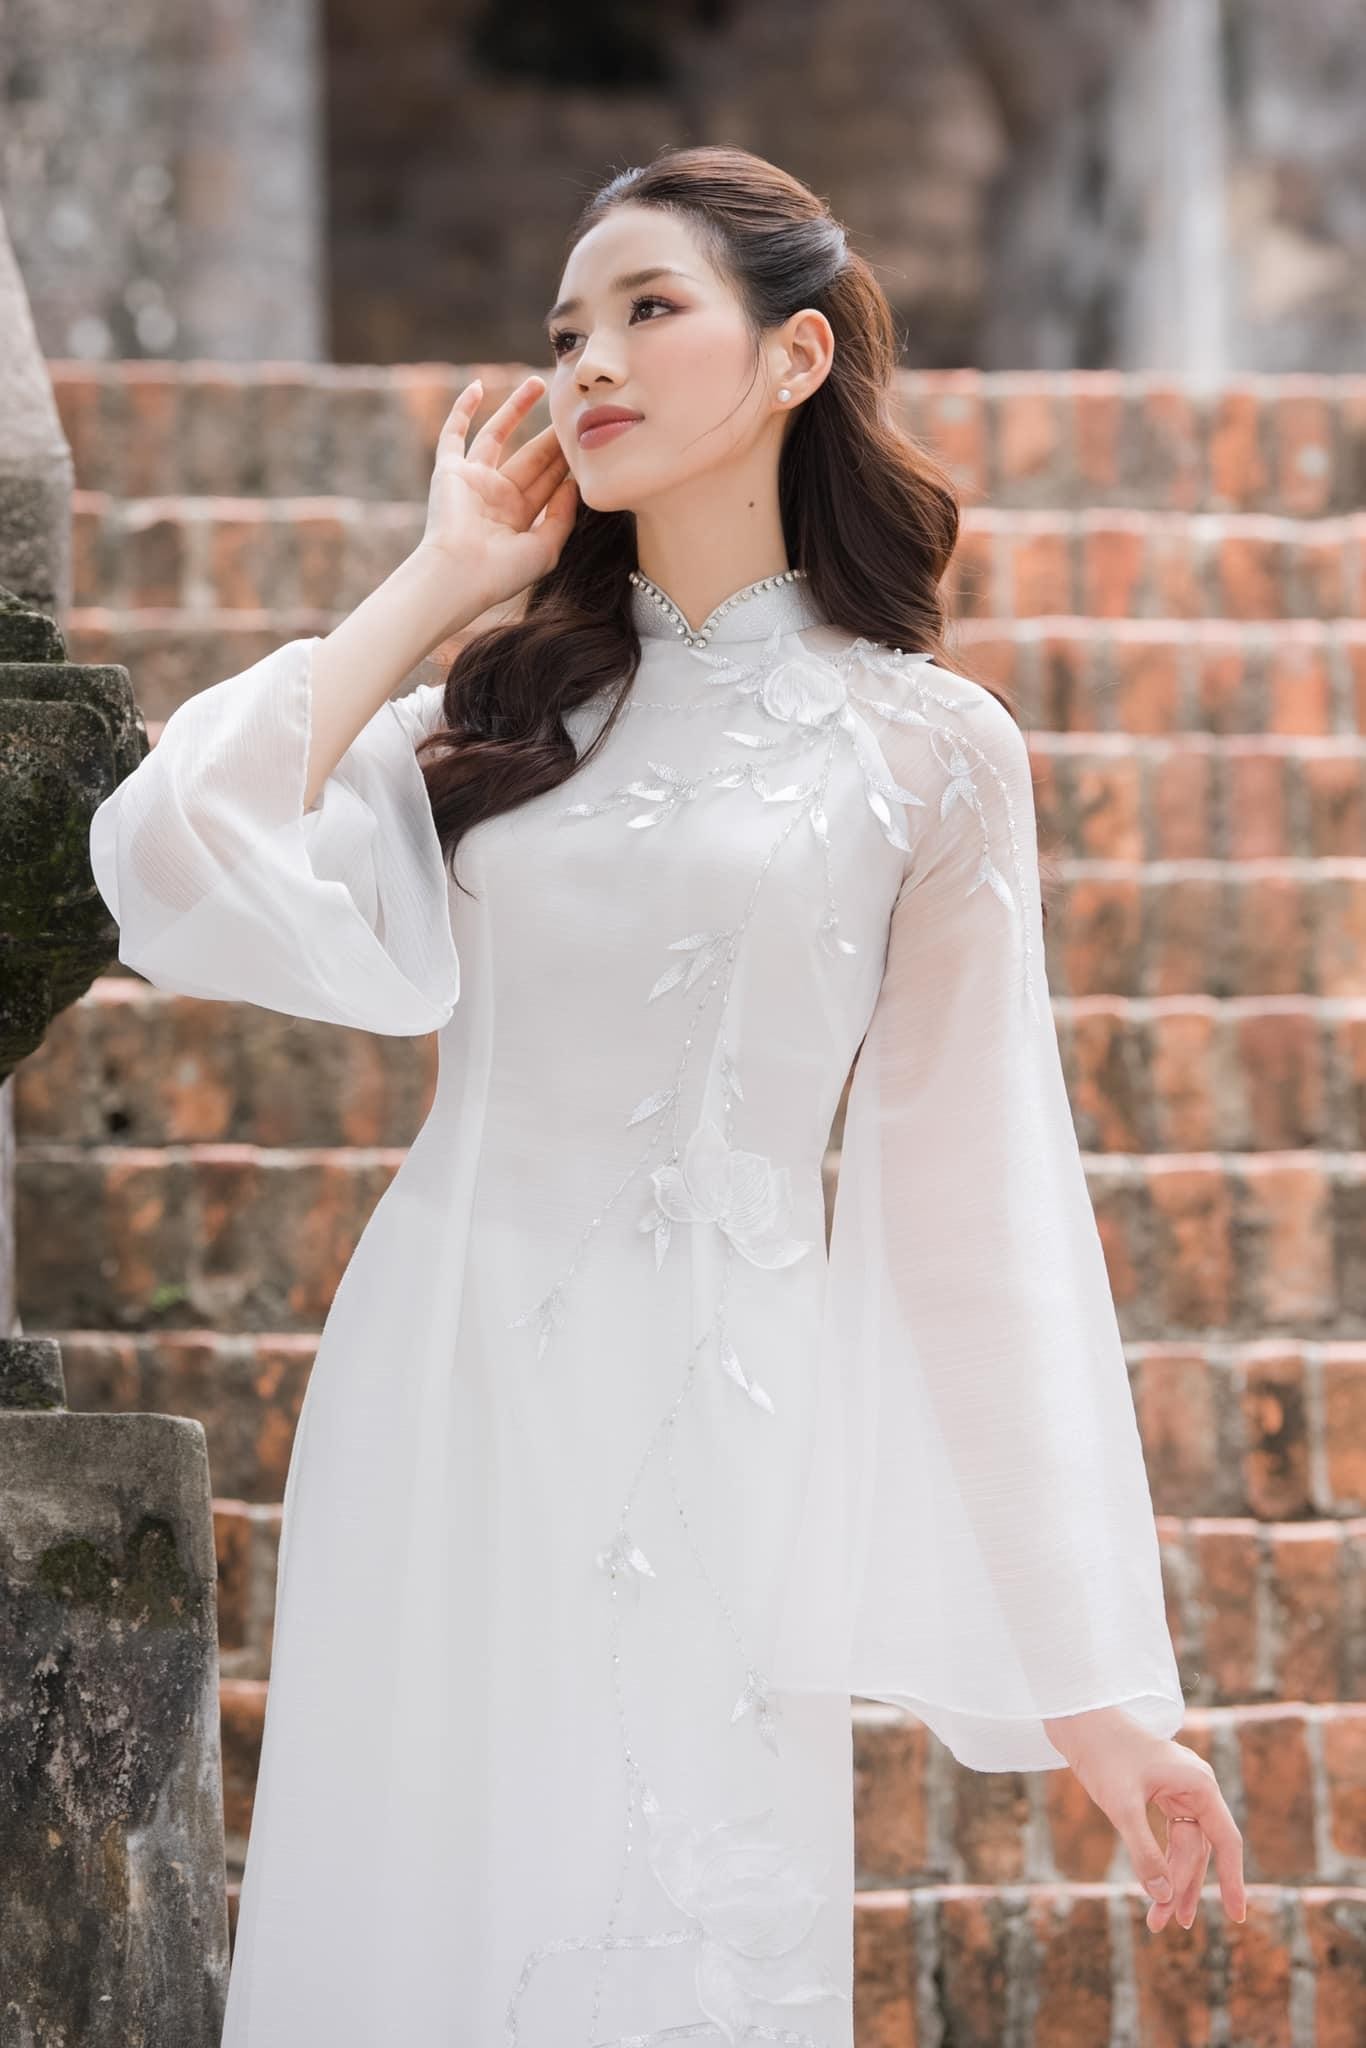 Hoa hậu Đỗ Thị Hà đẹp thuần khiết với áo dài trắng - Ảnh 2.